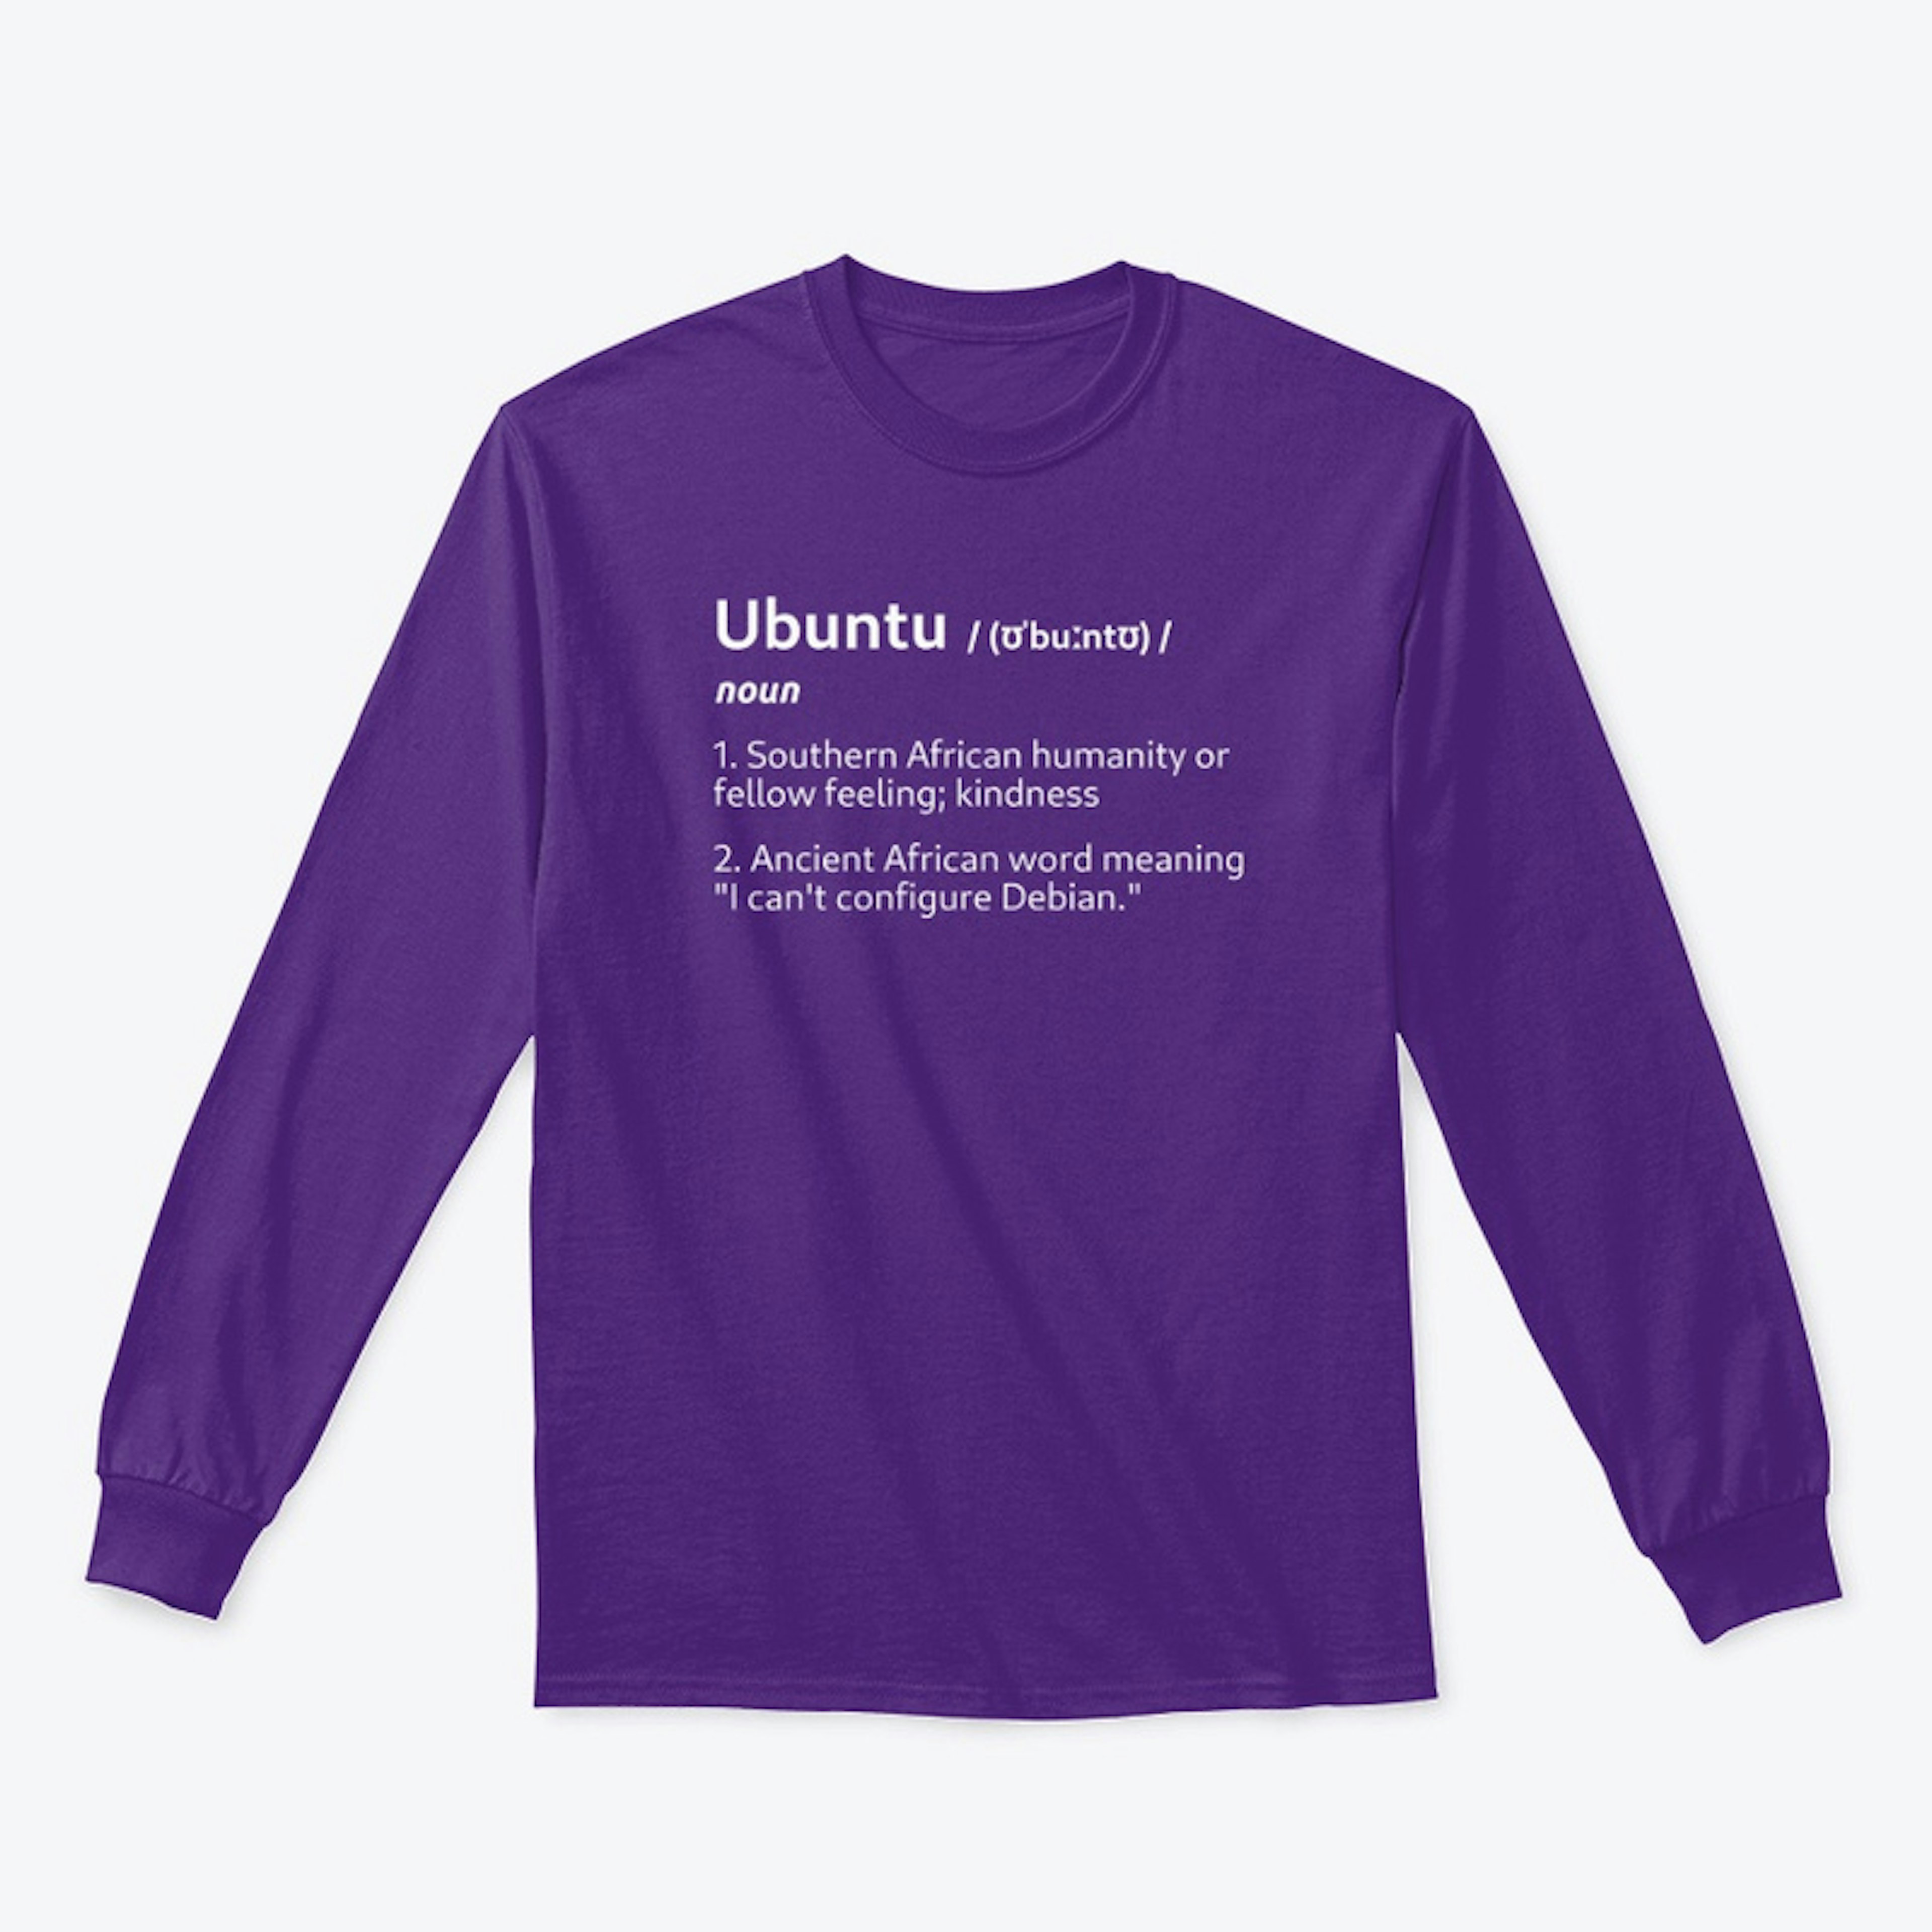 Ubuntu Definition Apparel